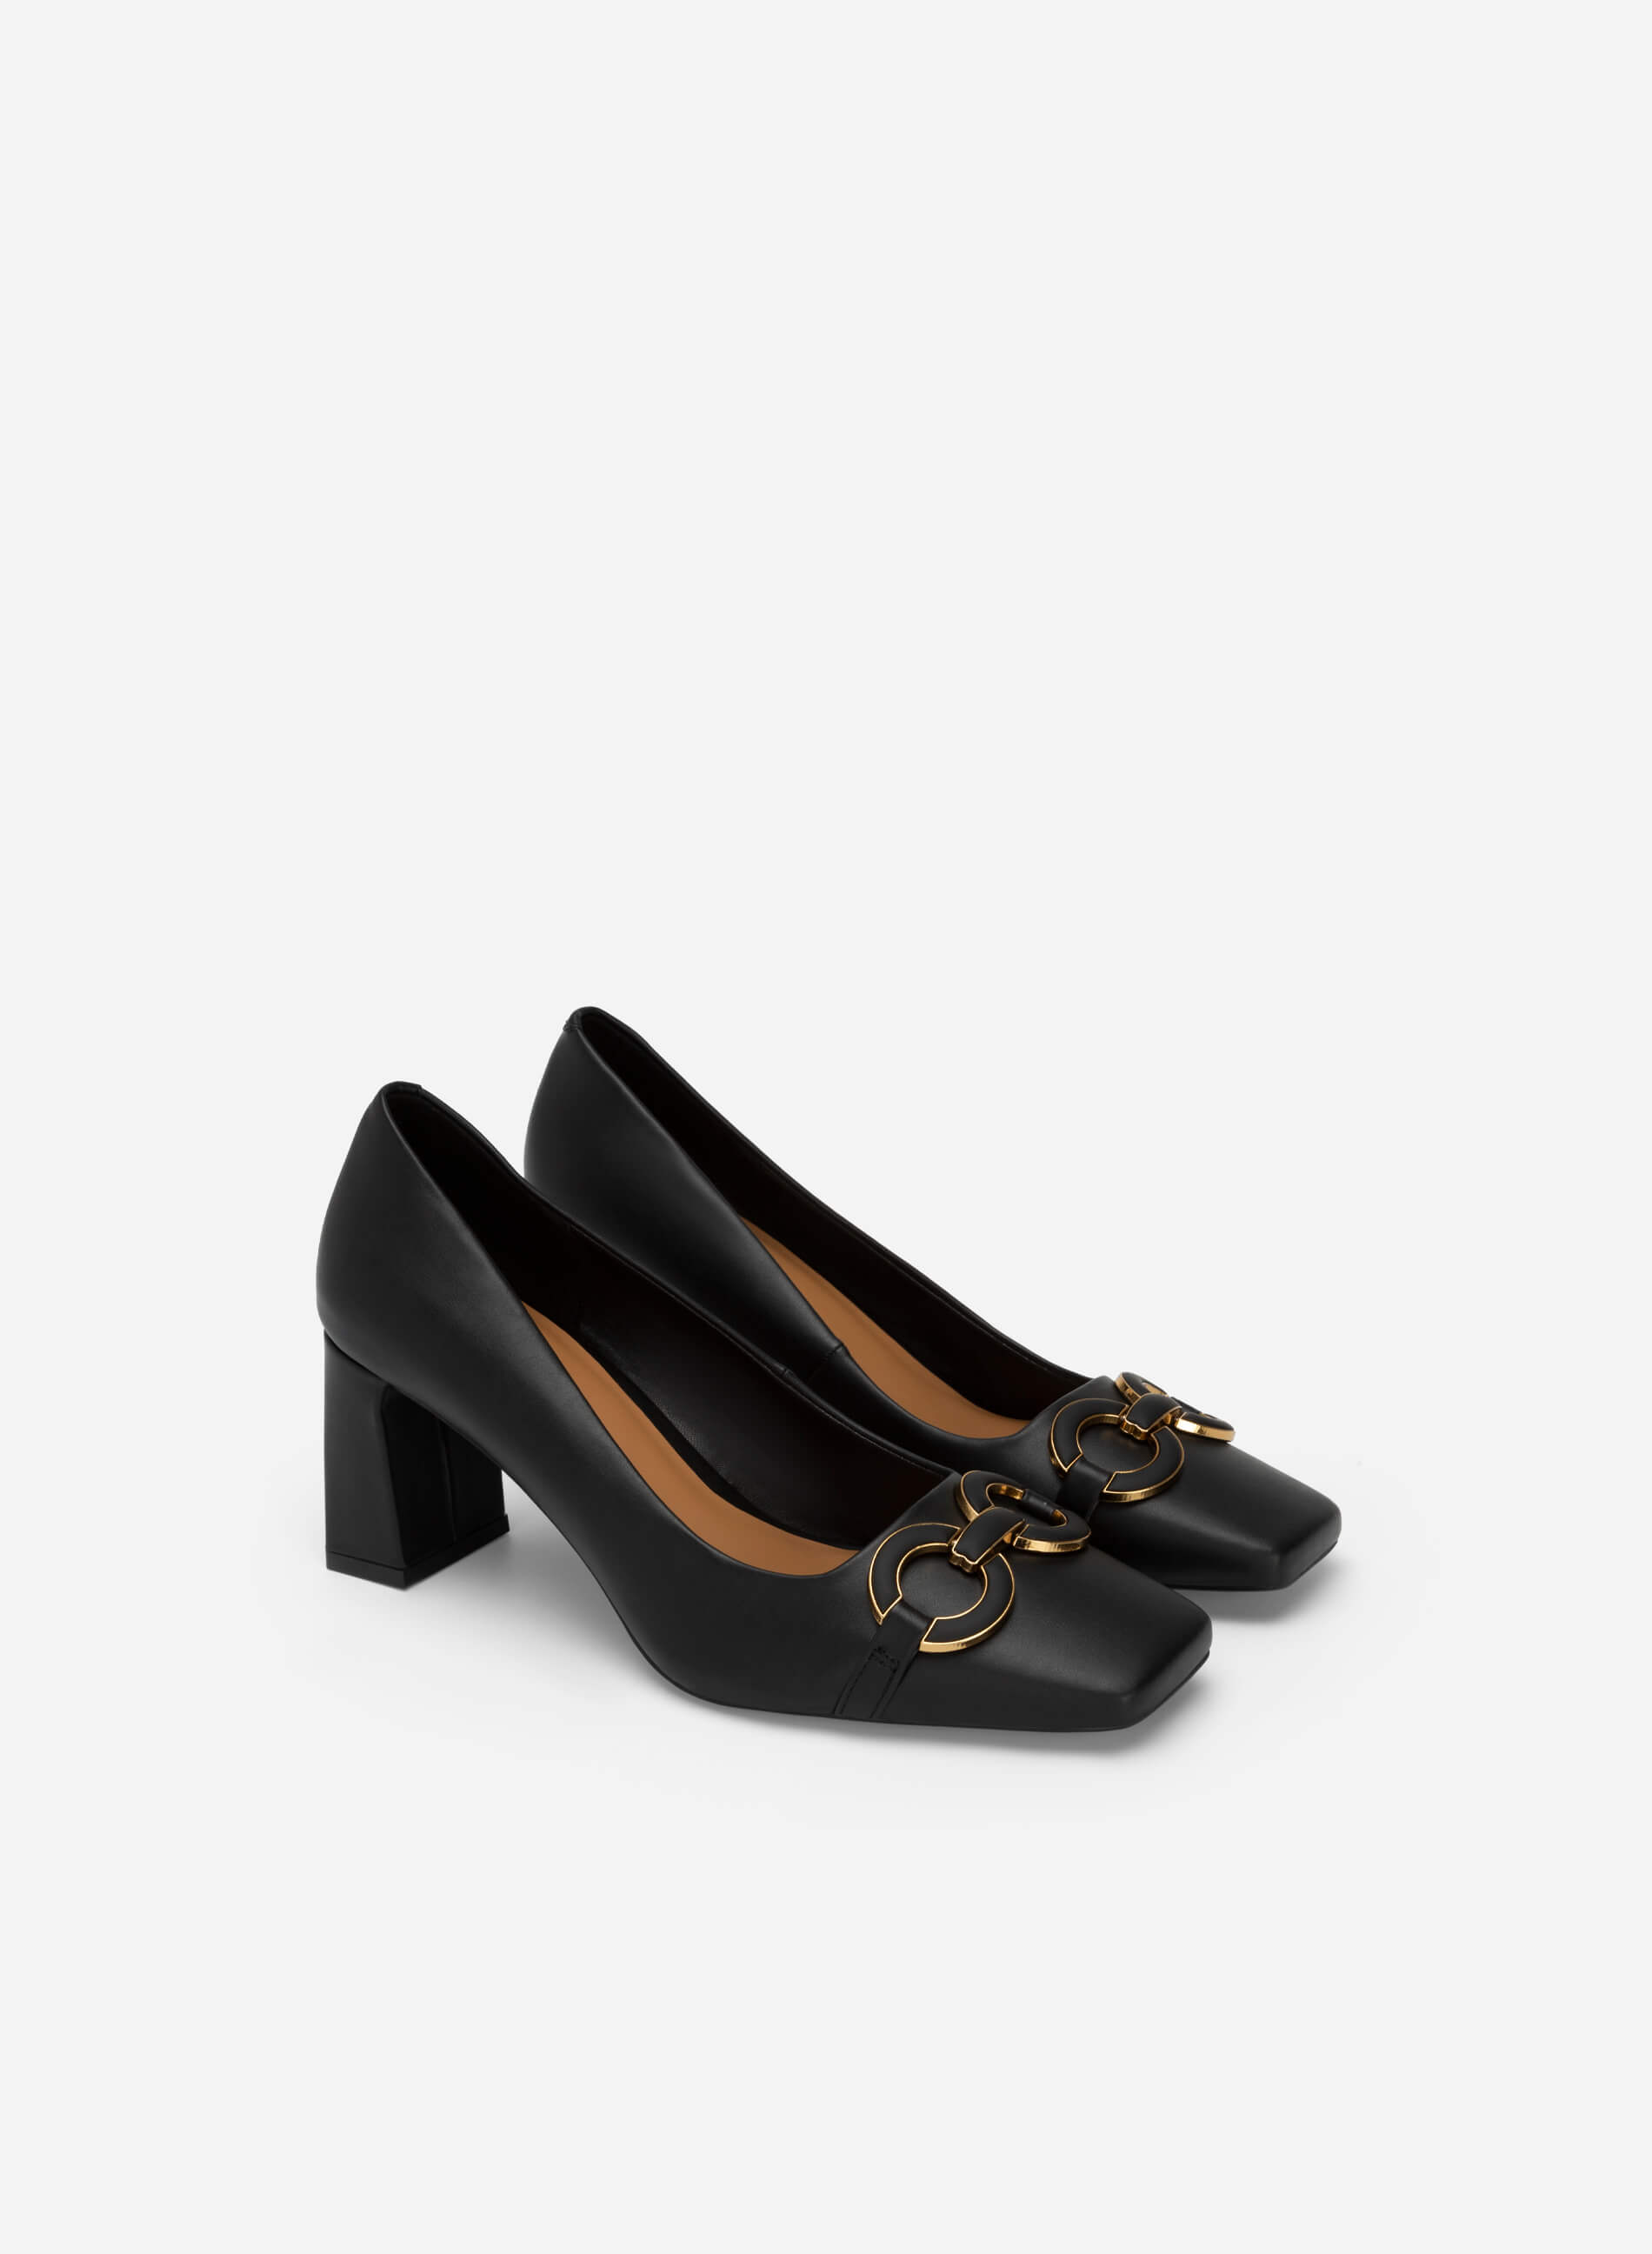 Gold Buckle Heel Square Toe Shoes - HIG 0562 - Black | VASCARA